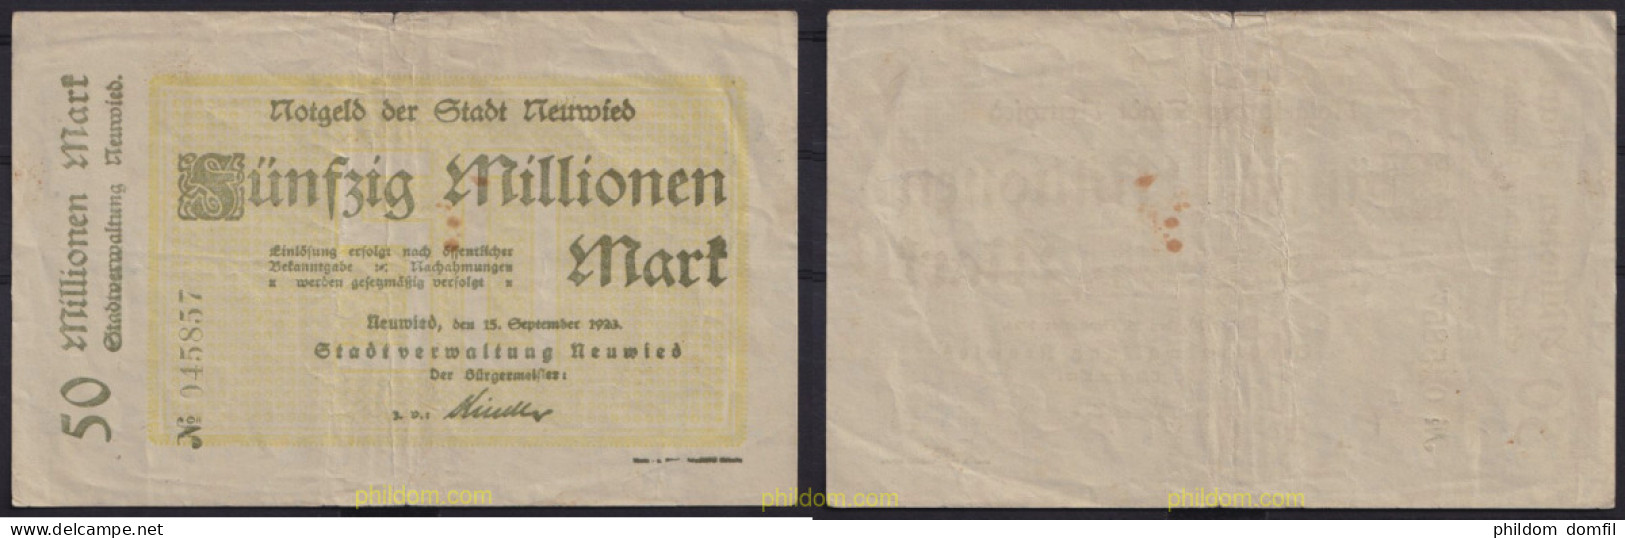 3681 ALEMANIA 1923 GERMANY 50000000 MARK NEUWIED 1923 - Administración De La Deuda